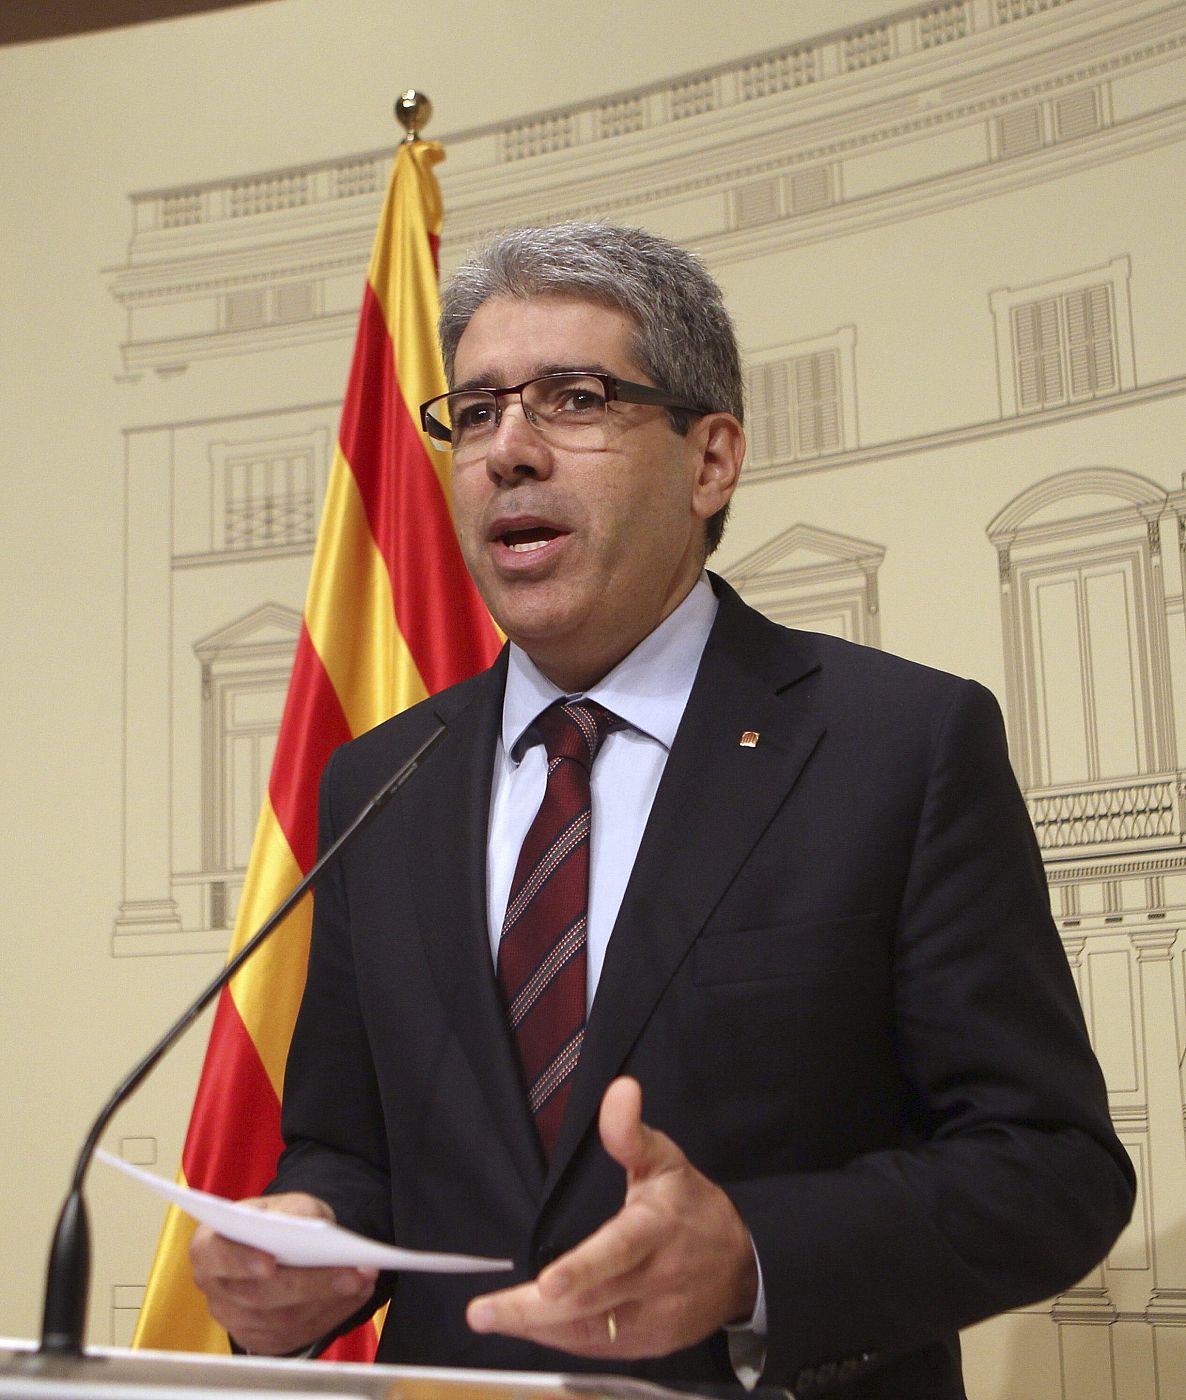 El Govern difundirá en Europa un informe sobre el "nivel de calidad democrática" de España